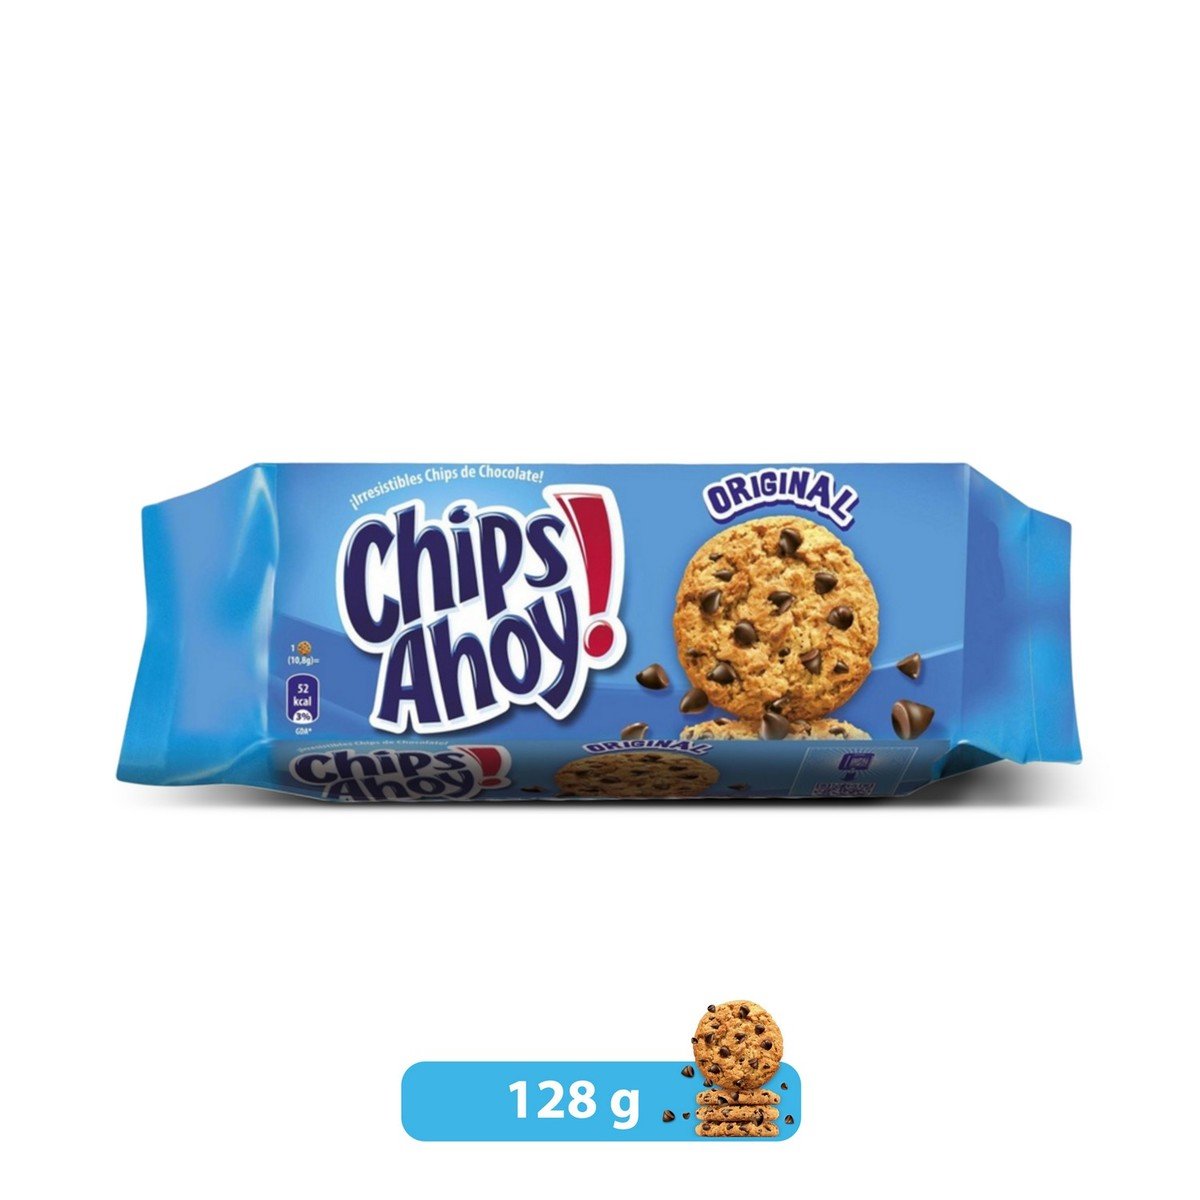 Buy Chips Ahoy Original Chocolate Cookies 128 g Online at Best Price | Cookies | Lulu UAE in UAE